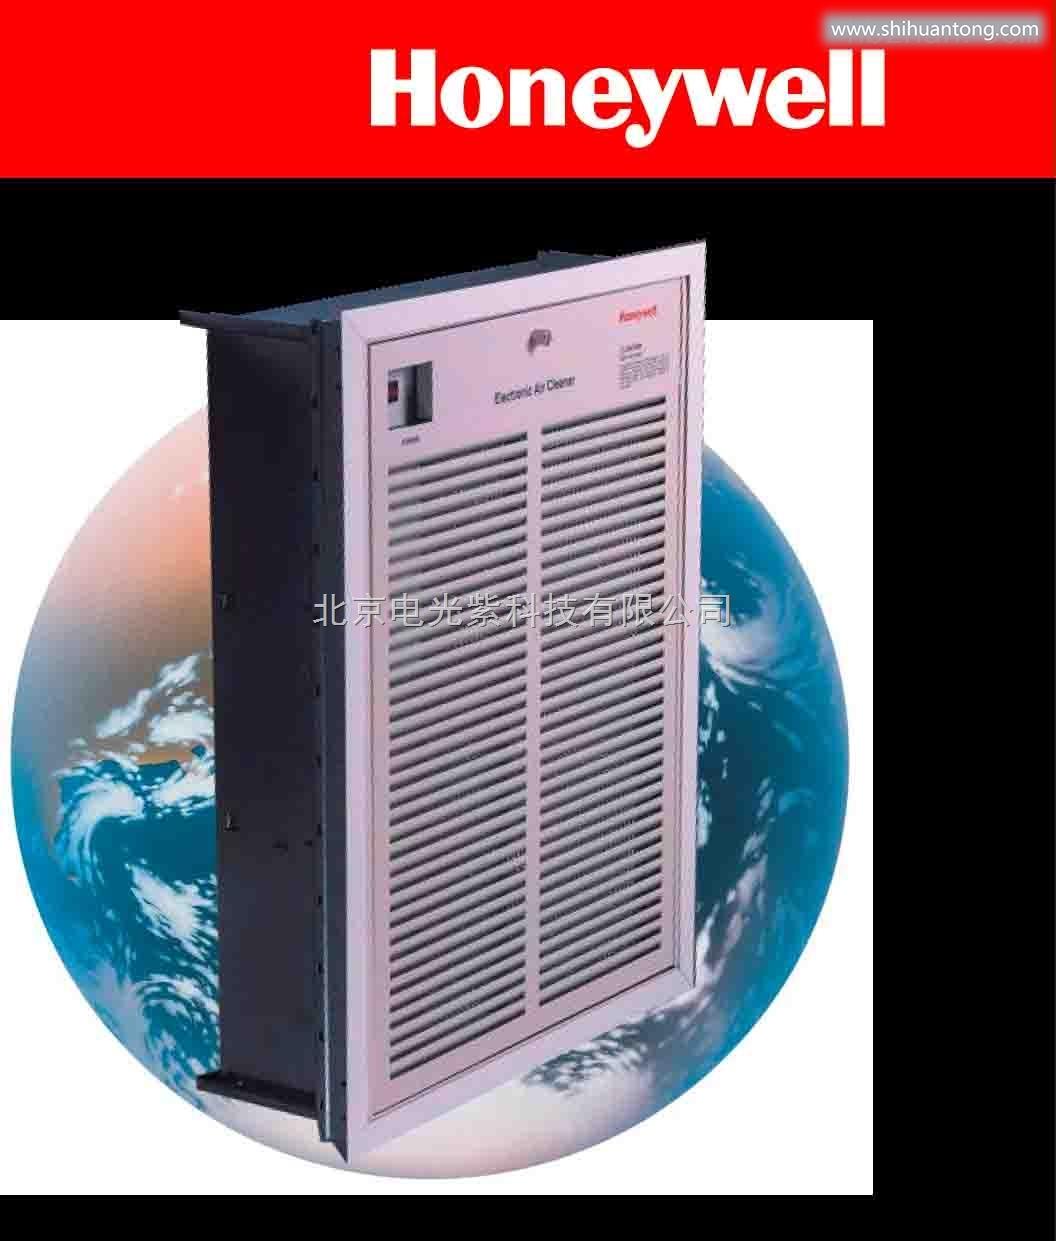 霍尼韦尔回风口型电子空气净化机